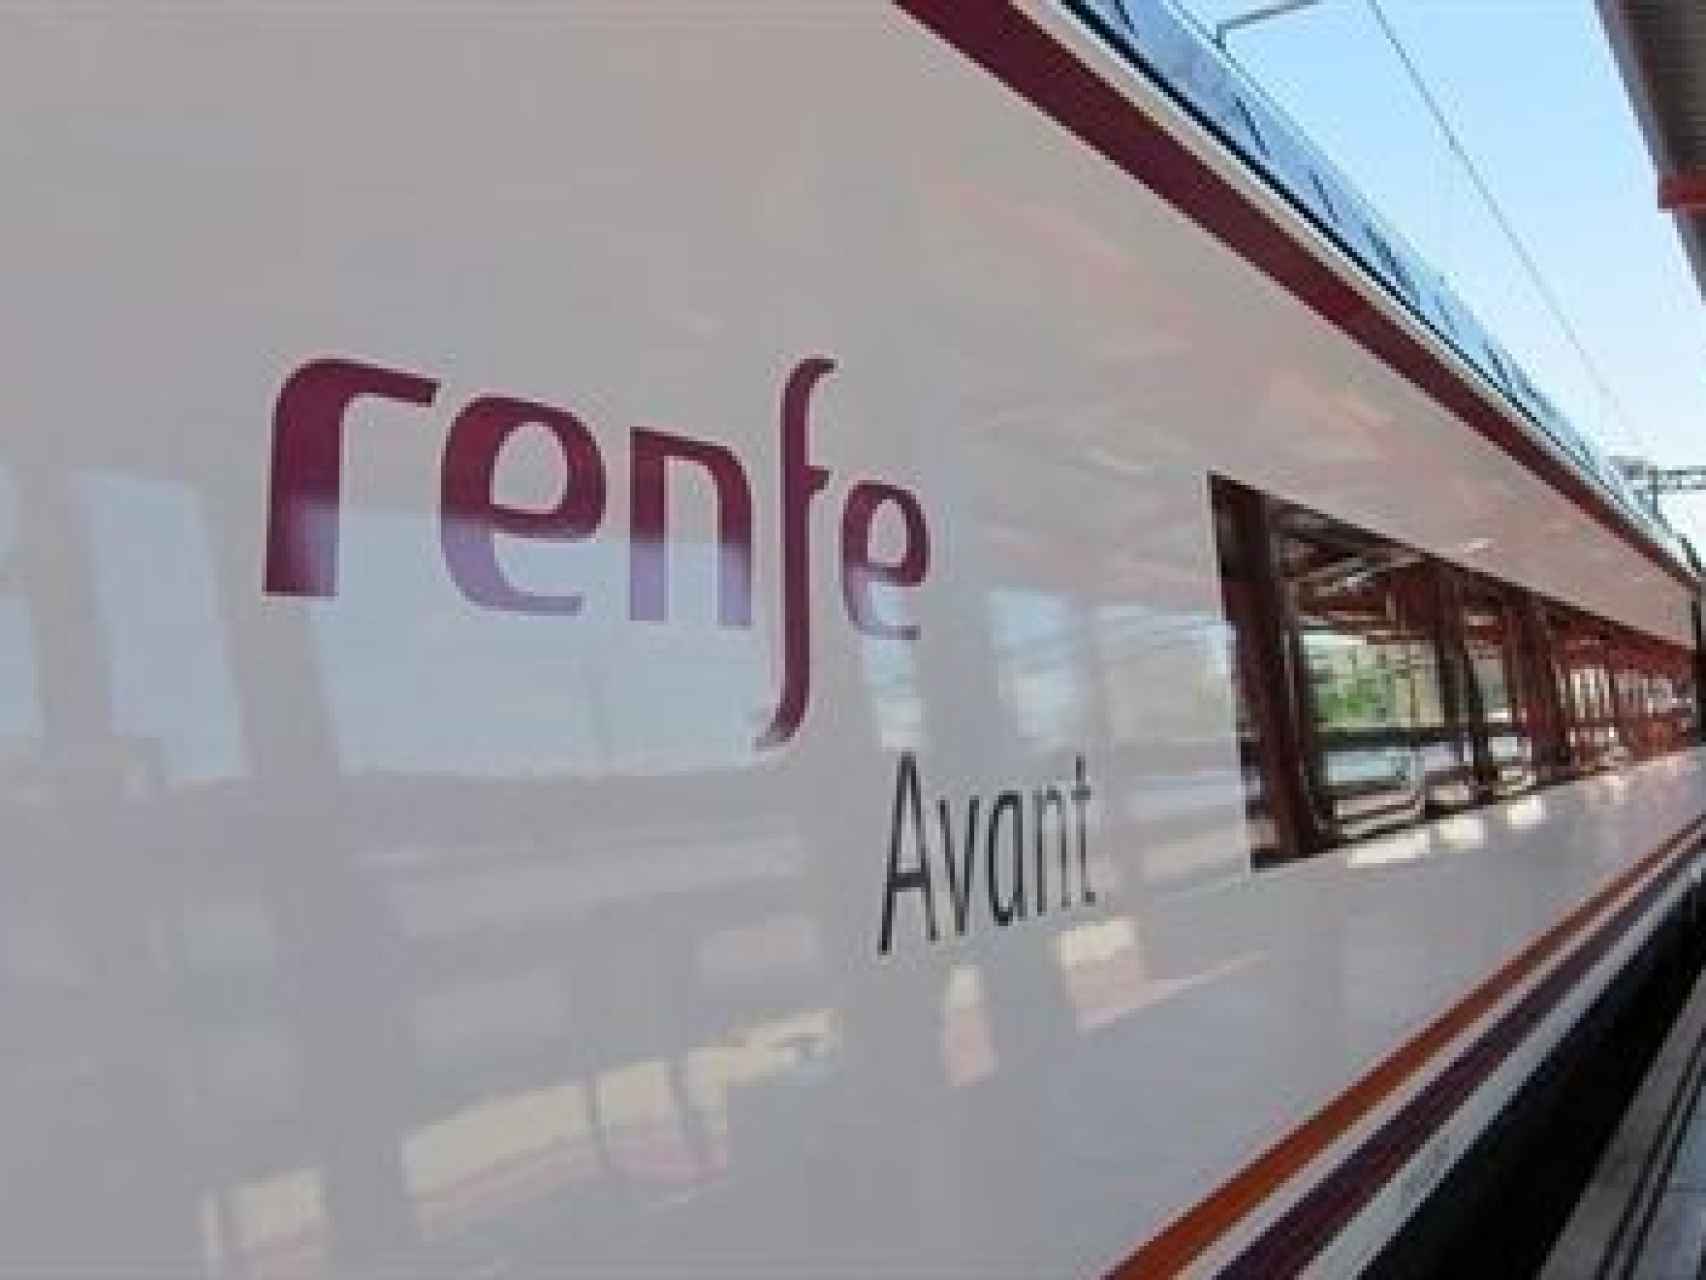 Imagen de archivo de un tren de Renfe.